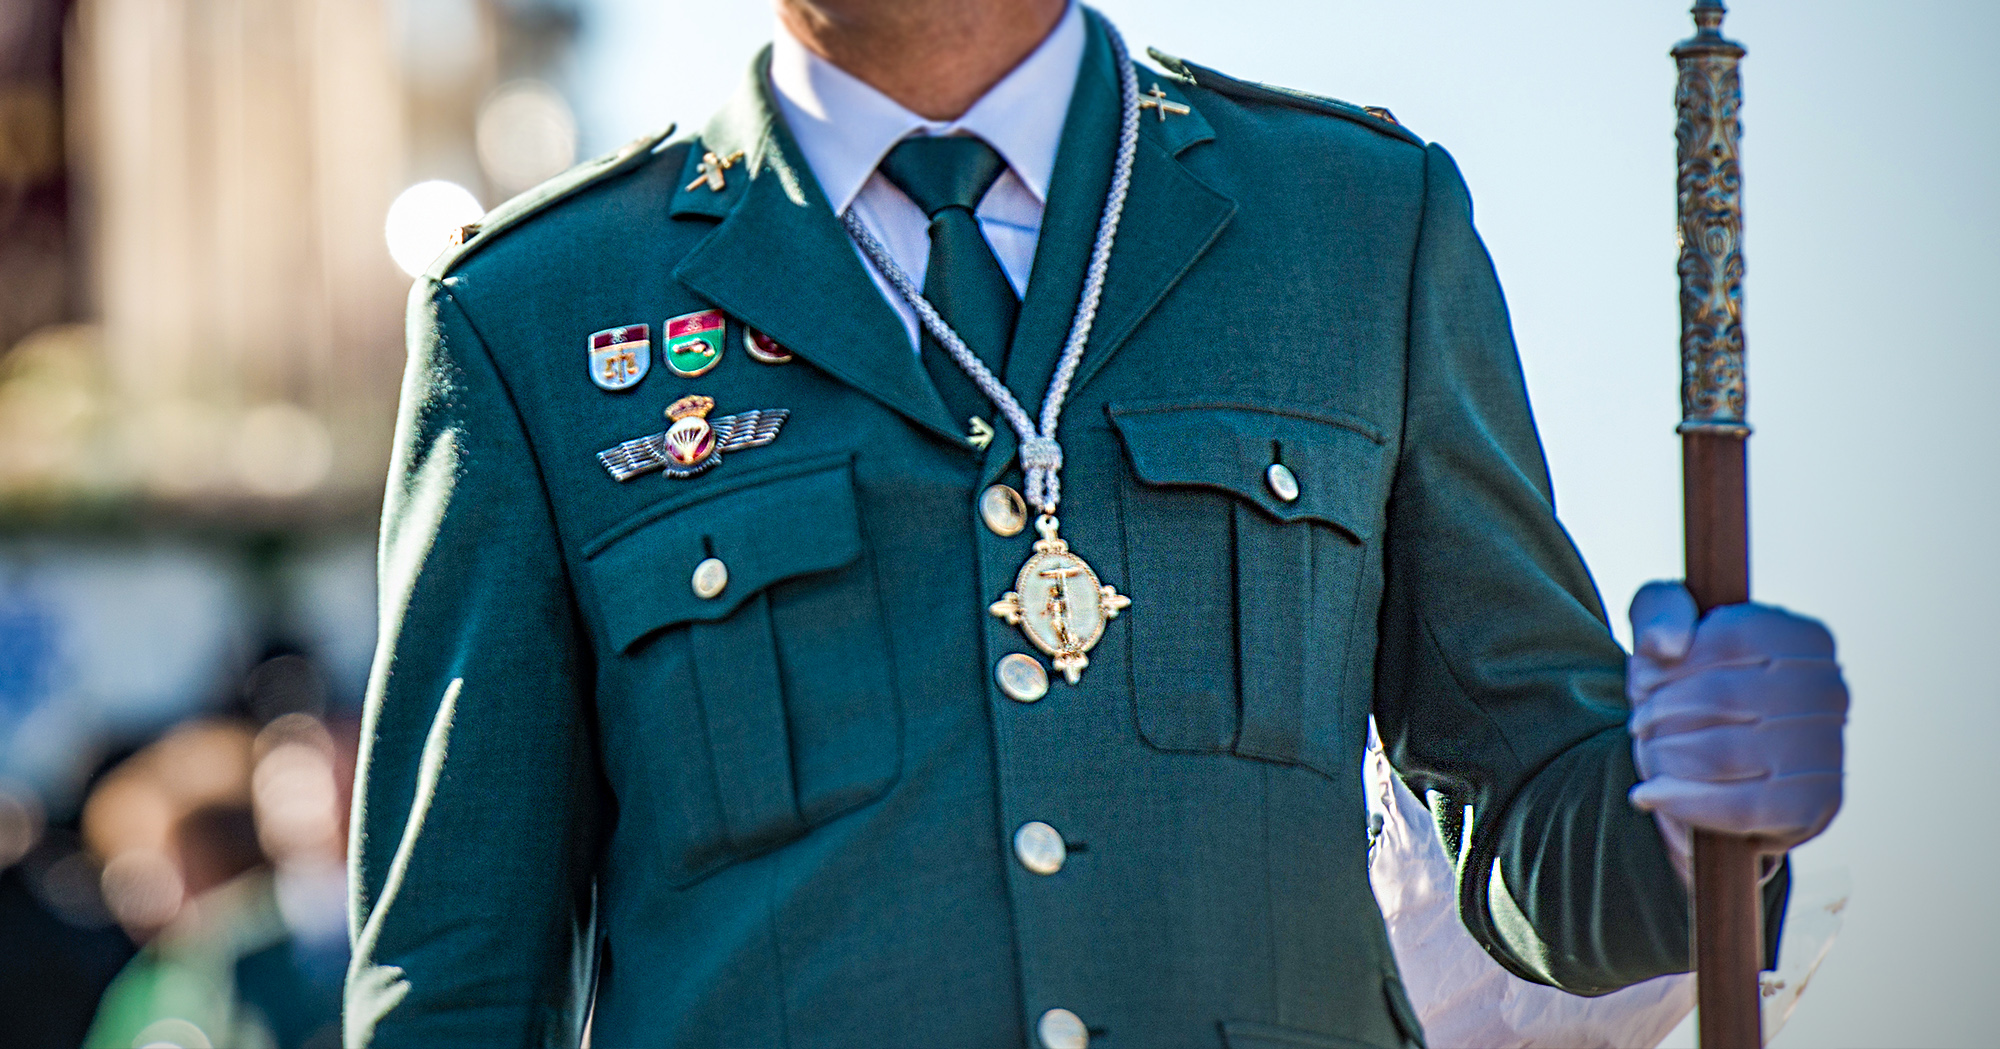 🇪🇸 El Corte Militar: referente en ropa militar hombre española - El Corte